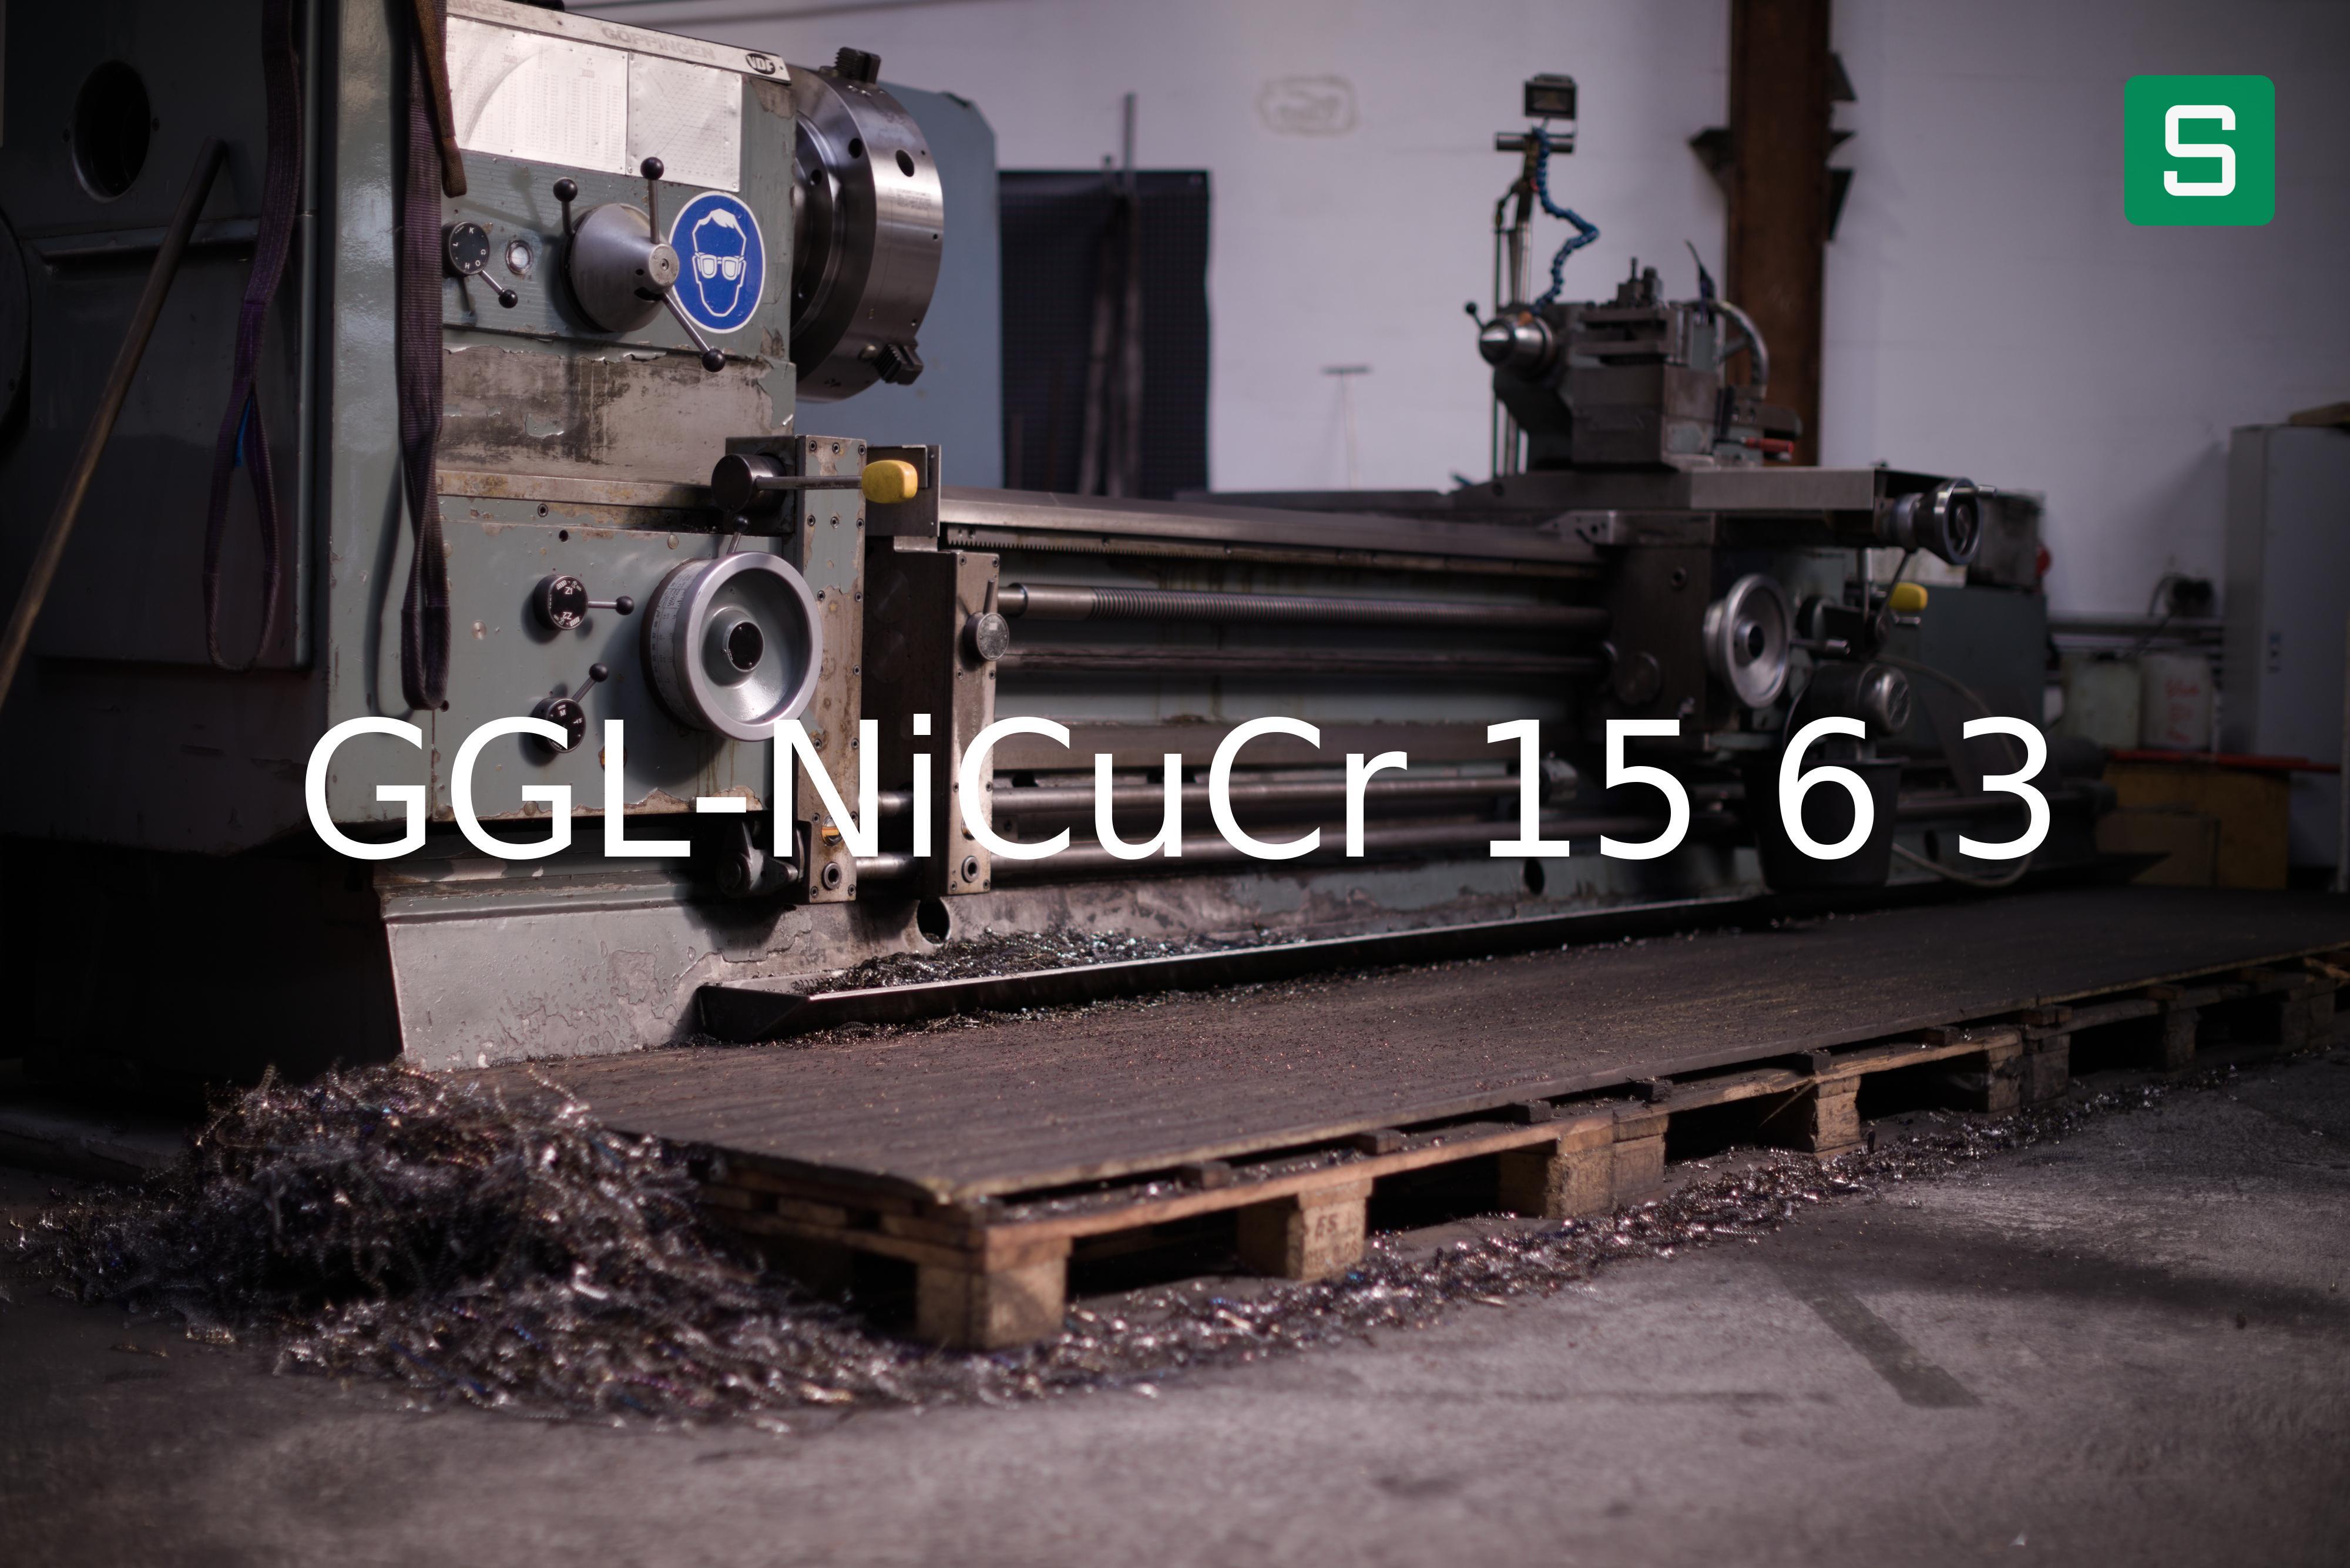 Material de Acero: GGL-NiCuCr 15 6 3